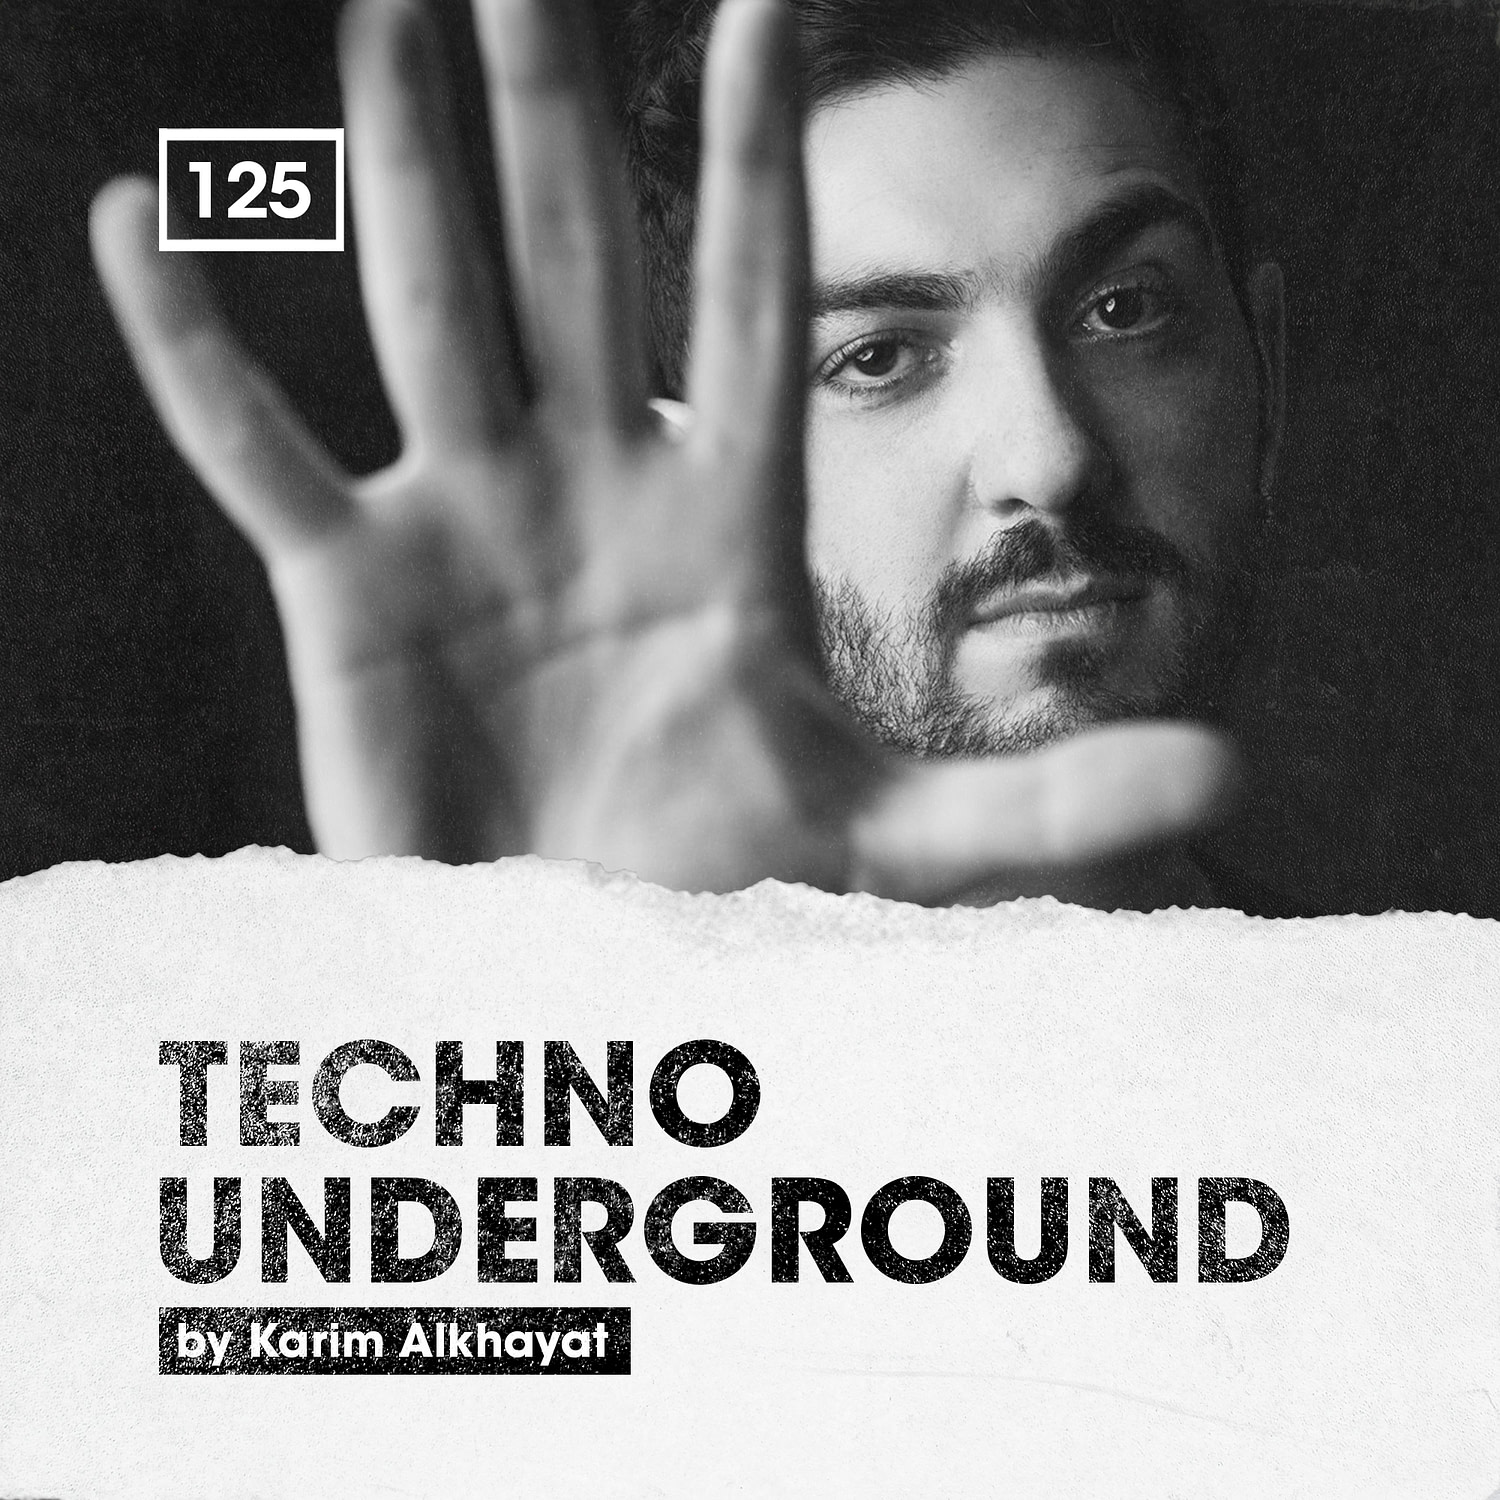 Bingoshakerz – Techno Underground by Karim Alkhayat